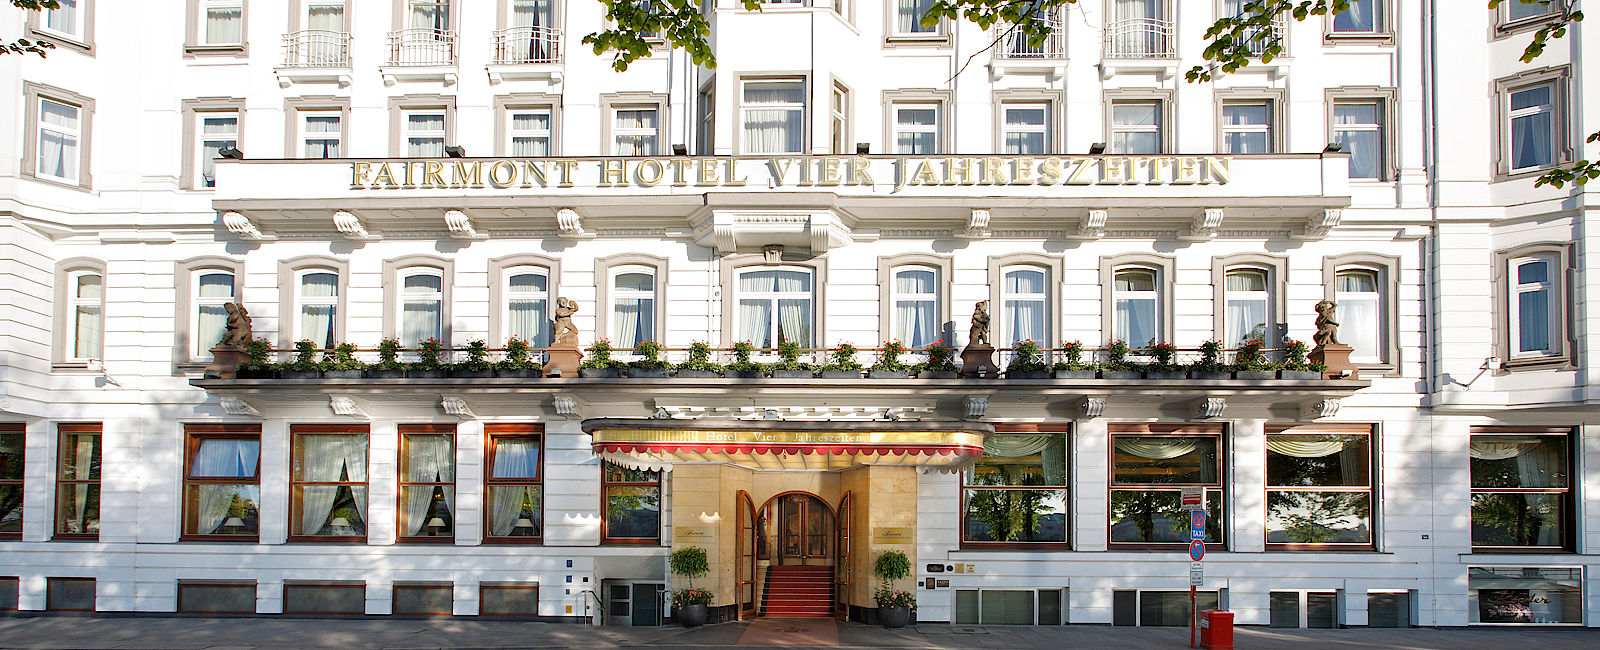 HOTEL TIPPS
 Fairmont Hotel Vier Jahreszeiten 
 Luxus Anwesen mit außergewöhnlichen Angeboten 